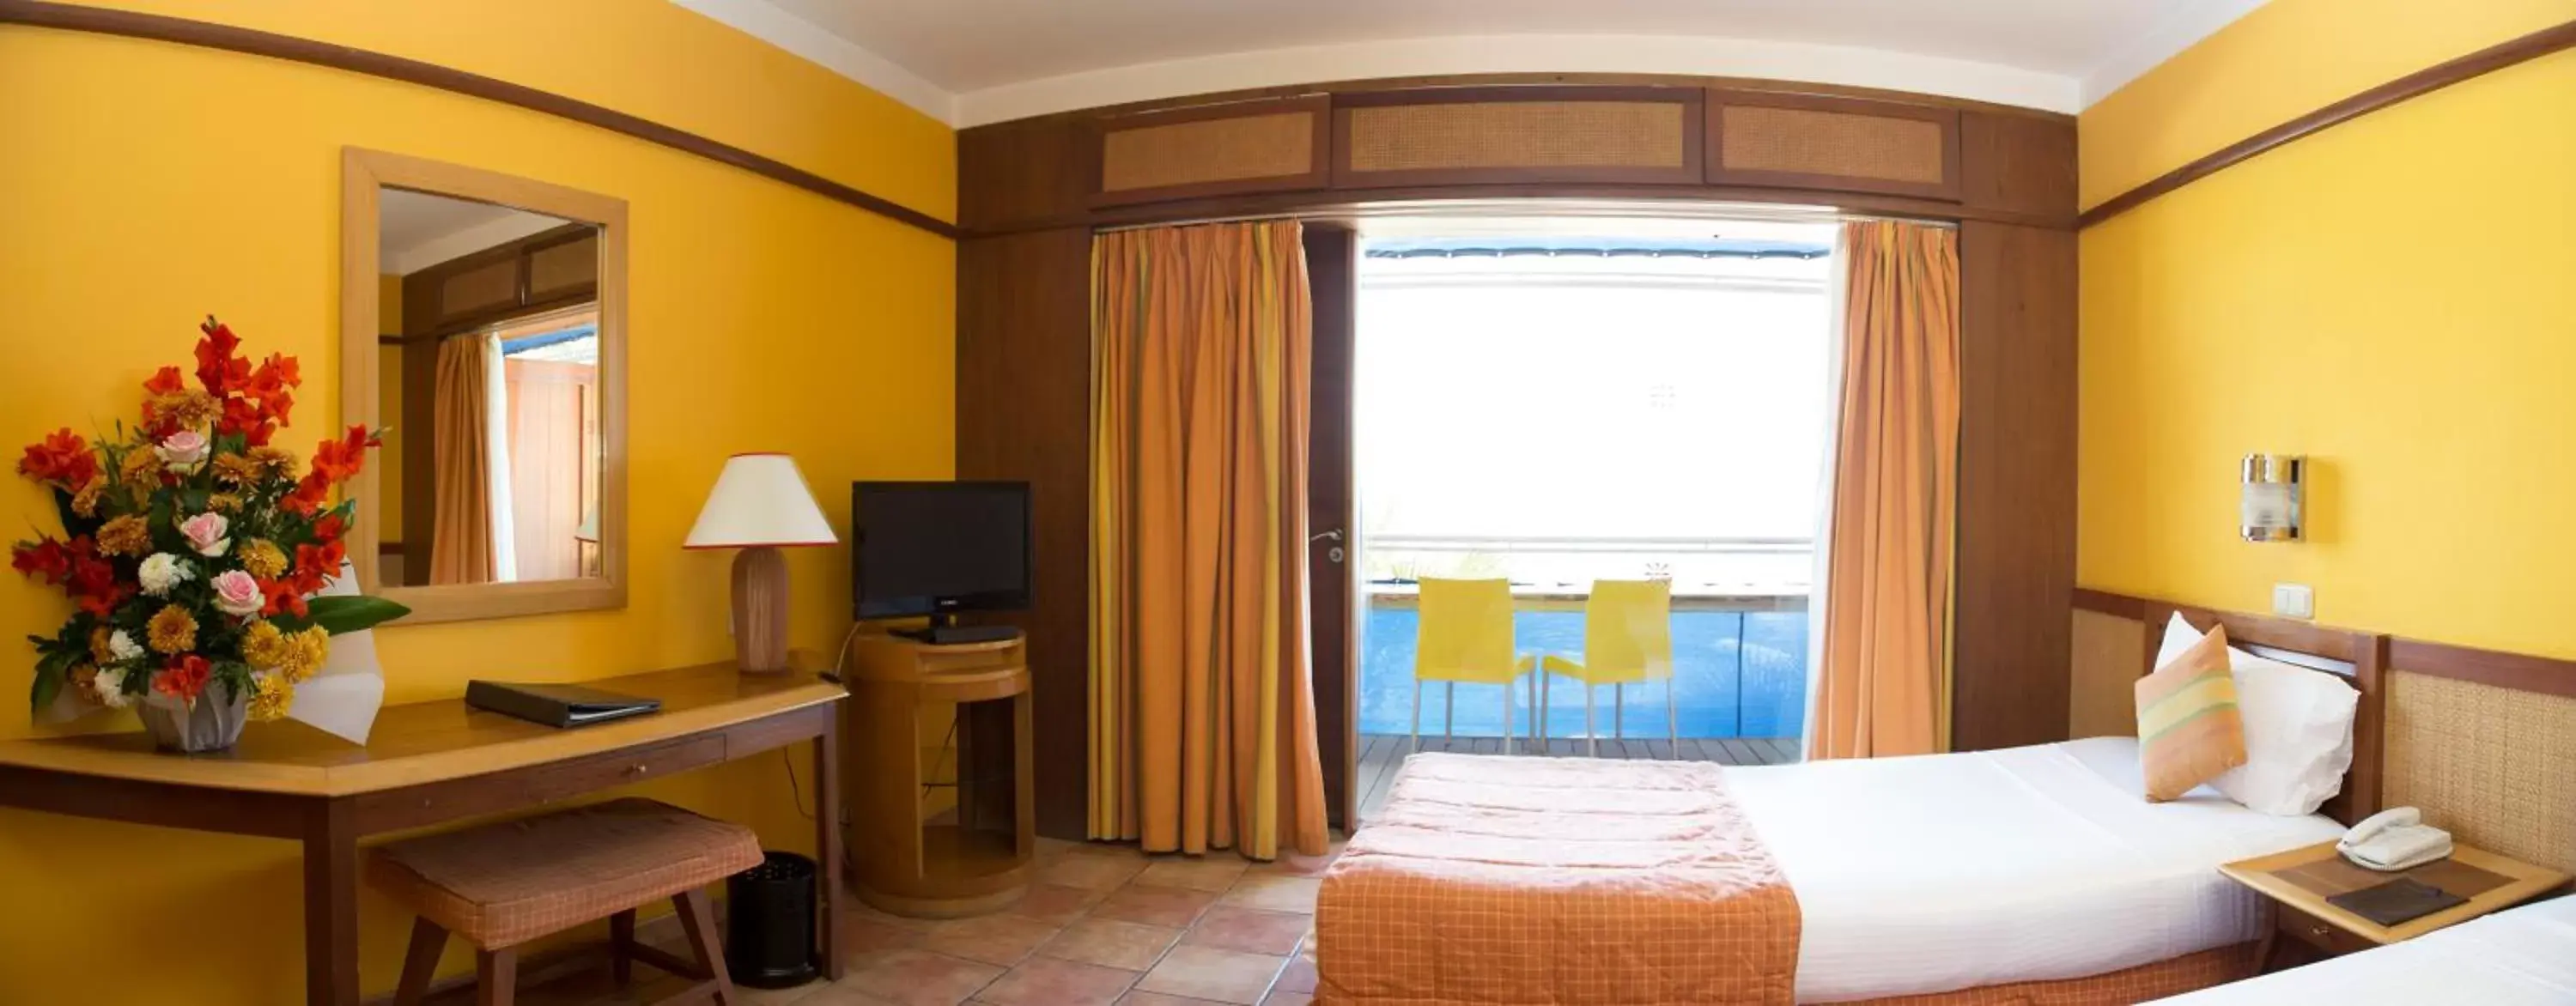 Bedroom in Lido Sharm Hotel Naama Bay